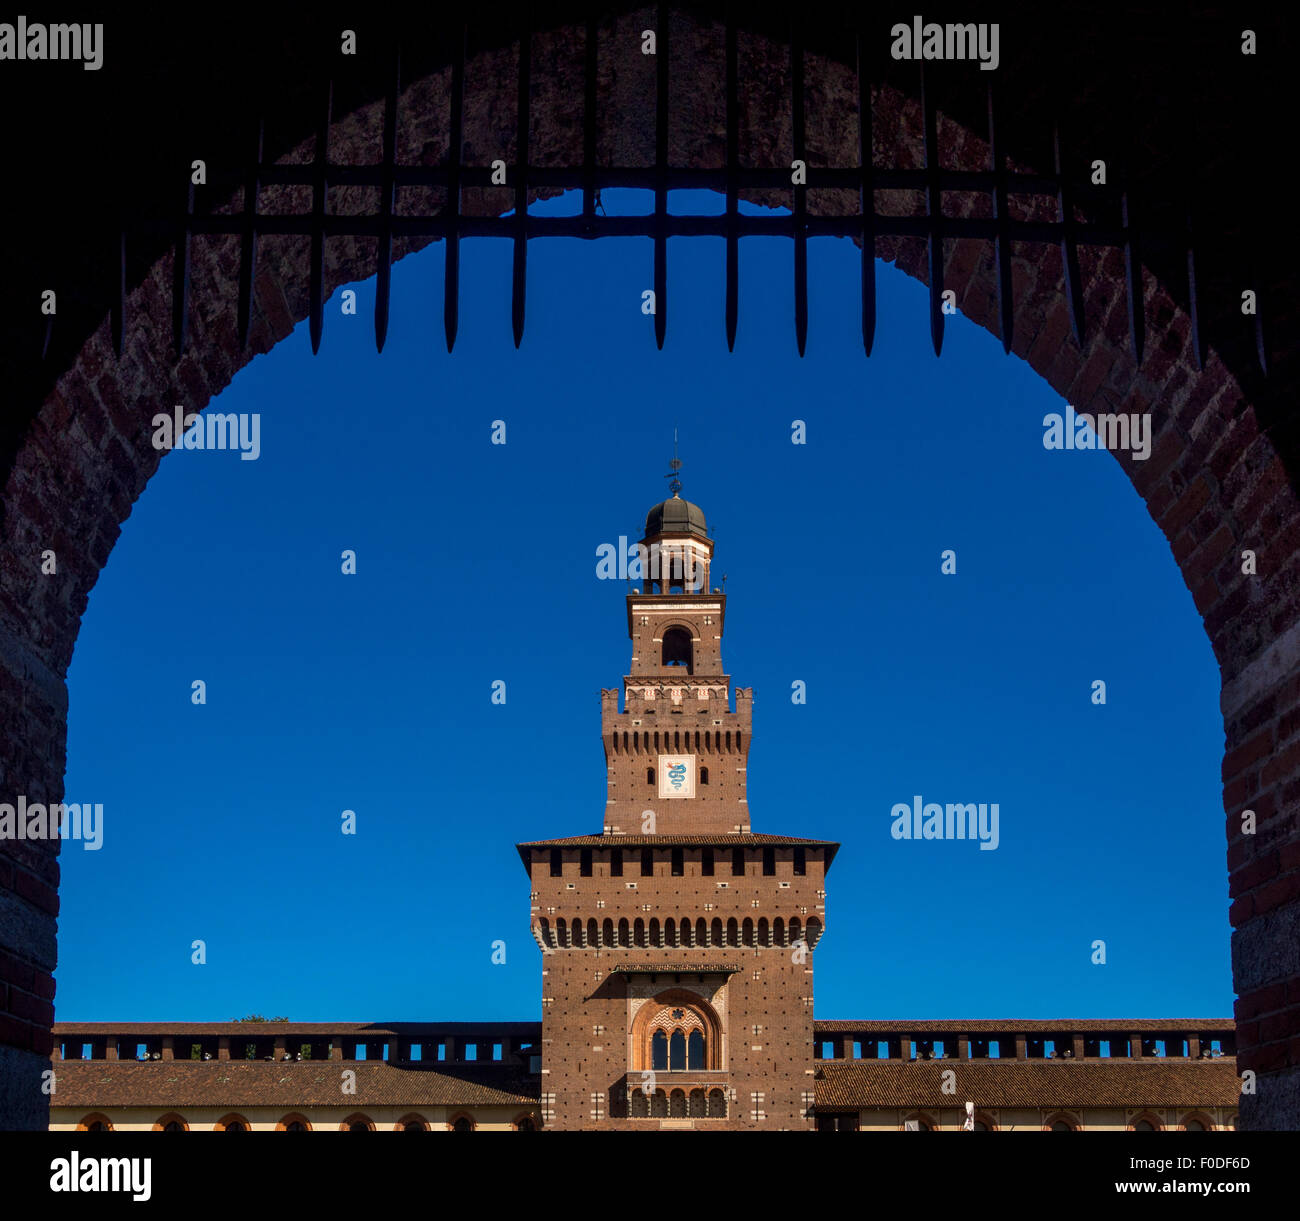 Arco de entrada al Castello Sforzesco. Milán, Italia. Foto de stock